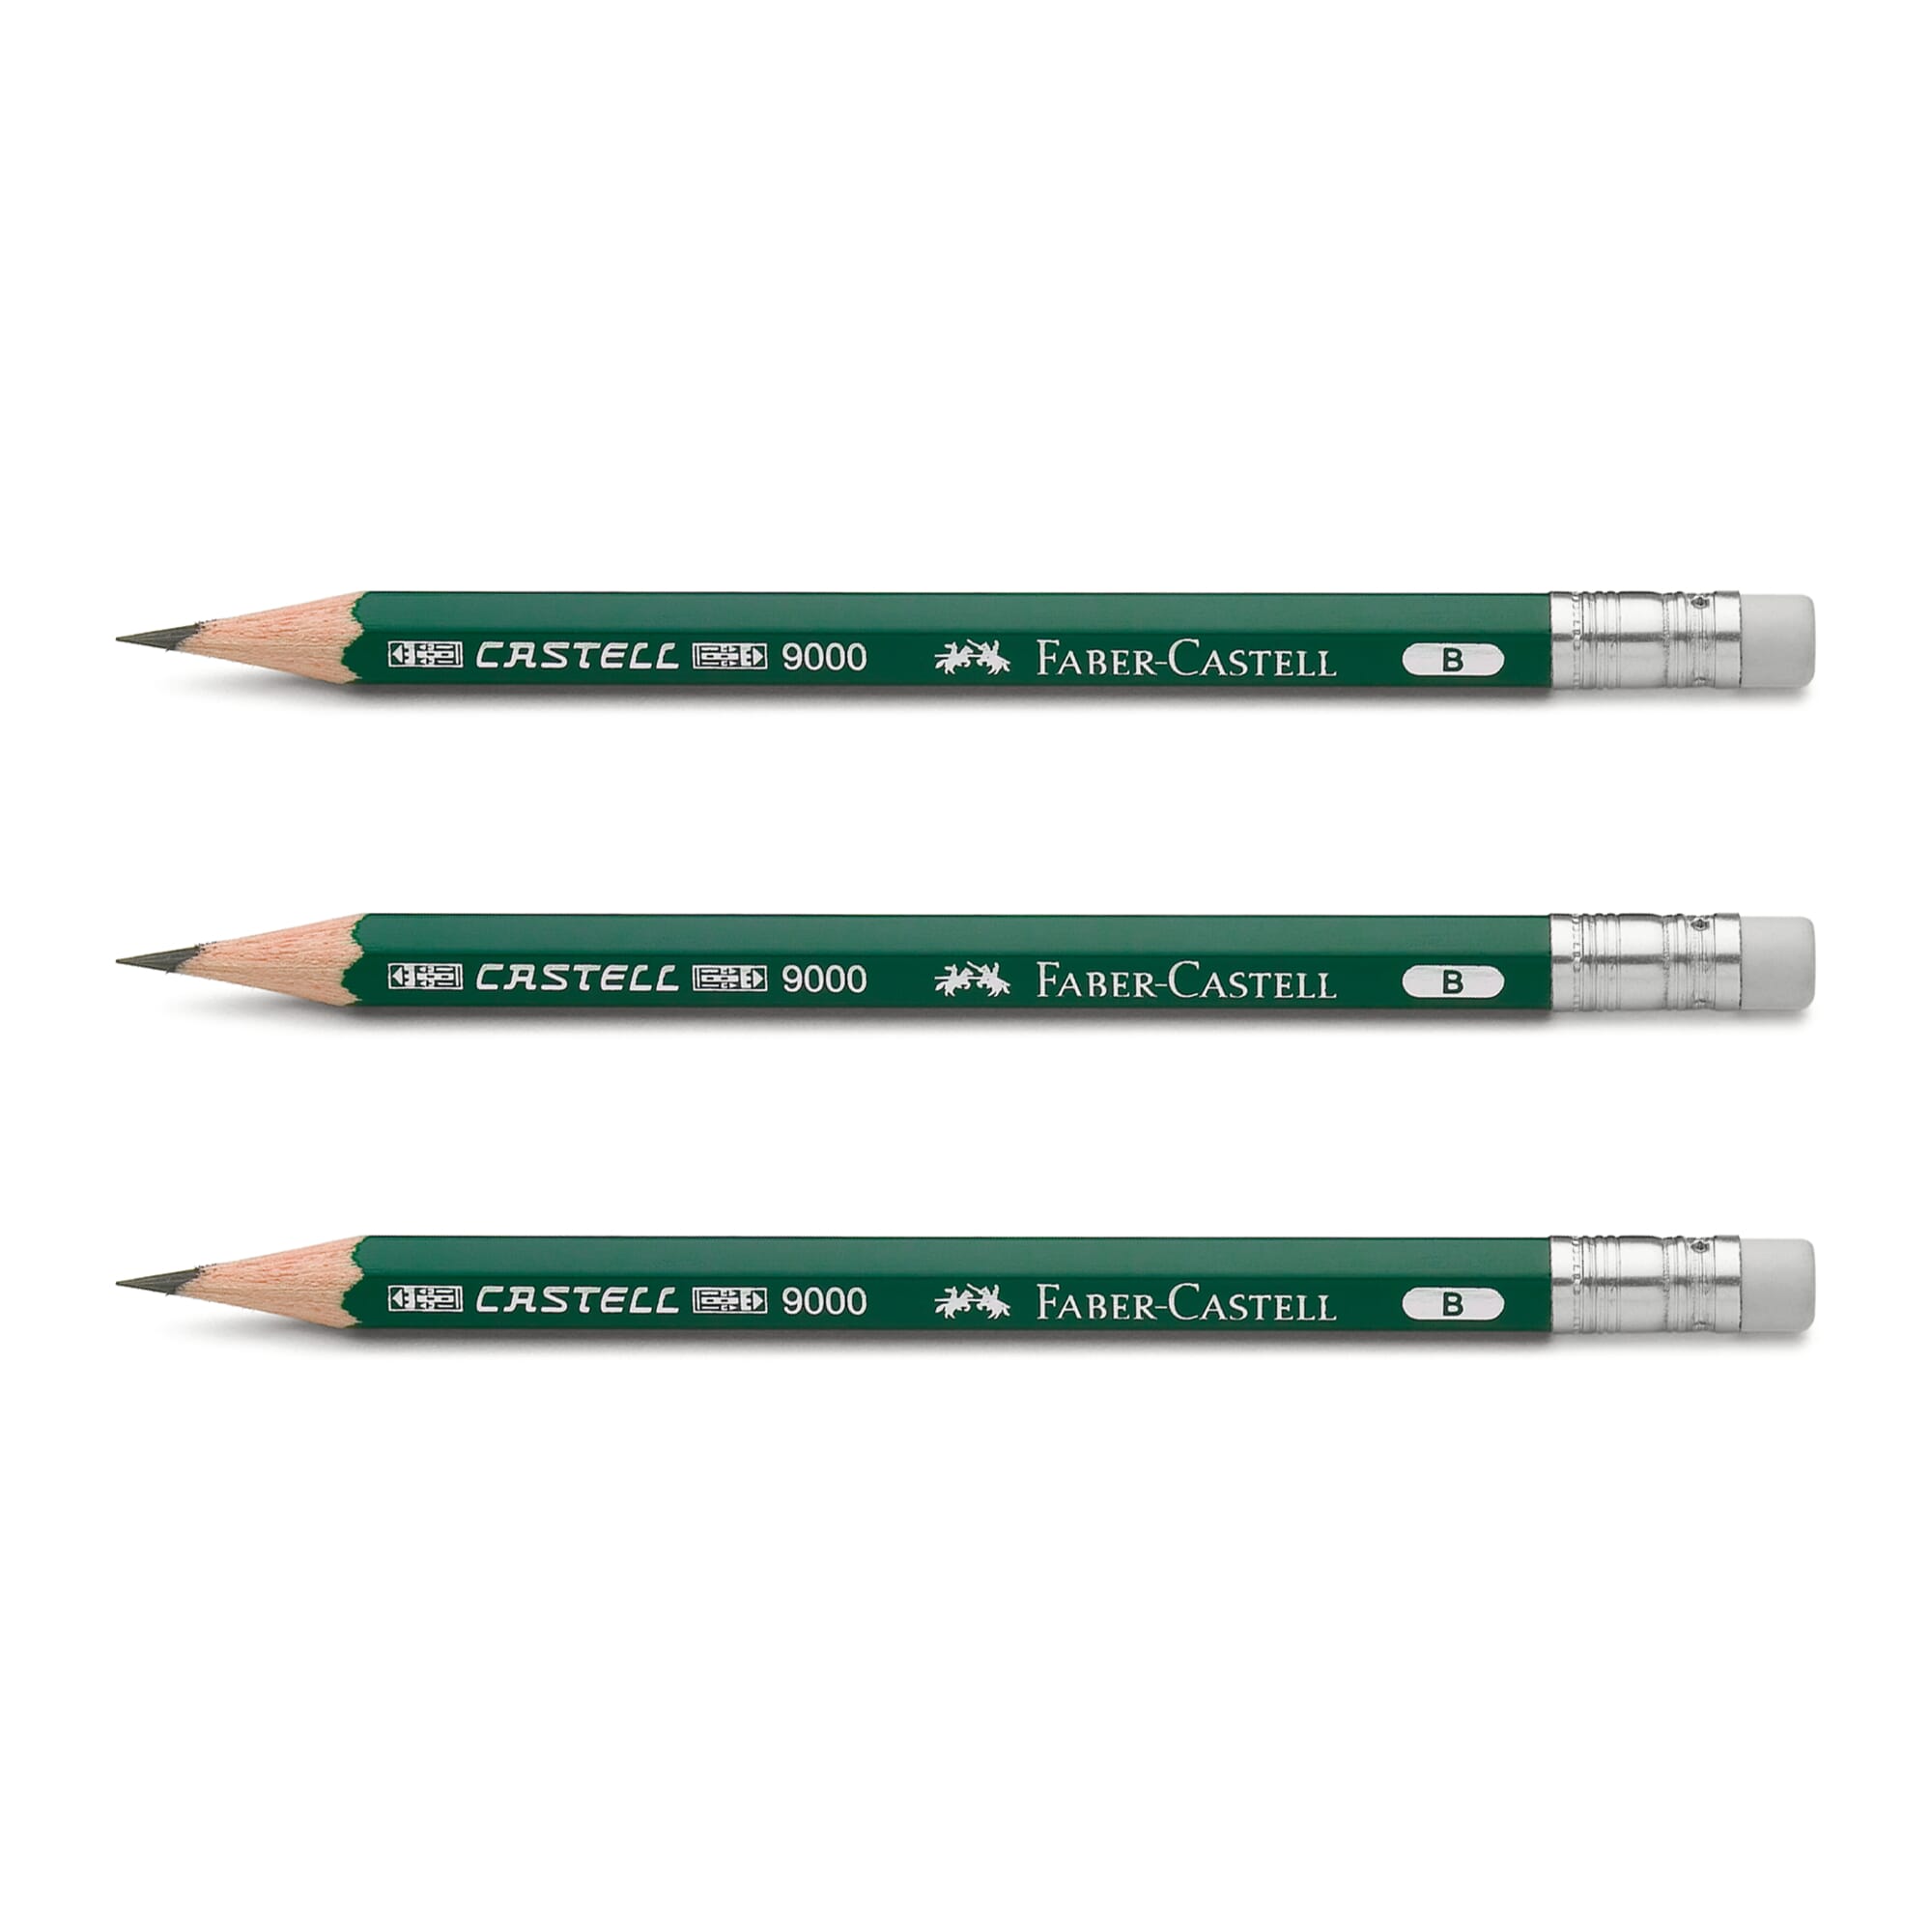 Spare pencil 13 cm